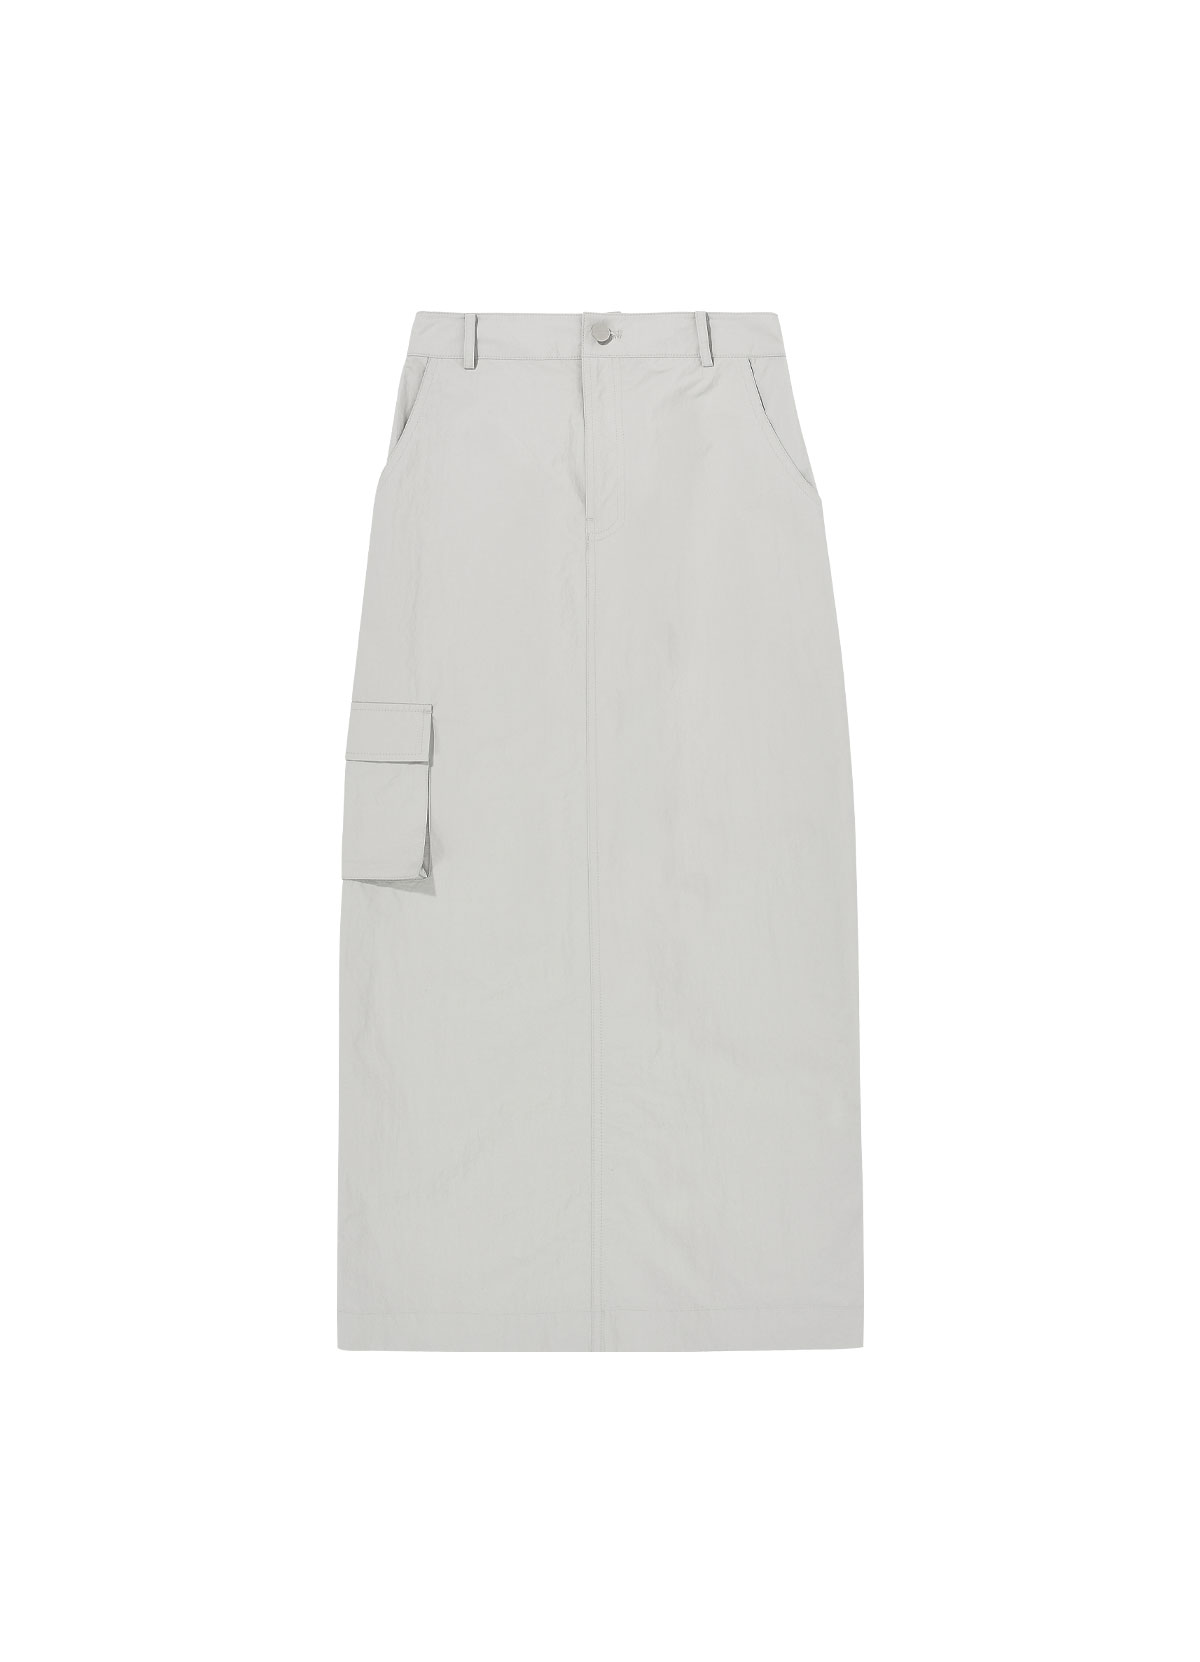 Pocket Skirt (gray)